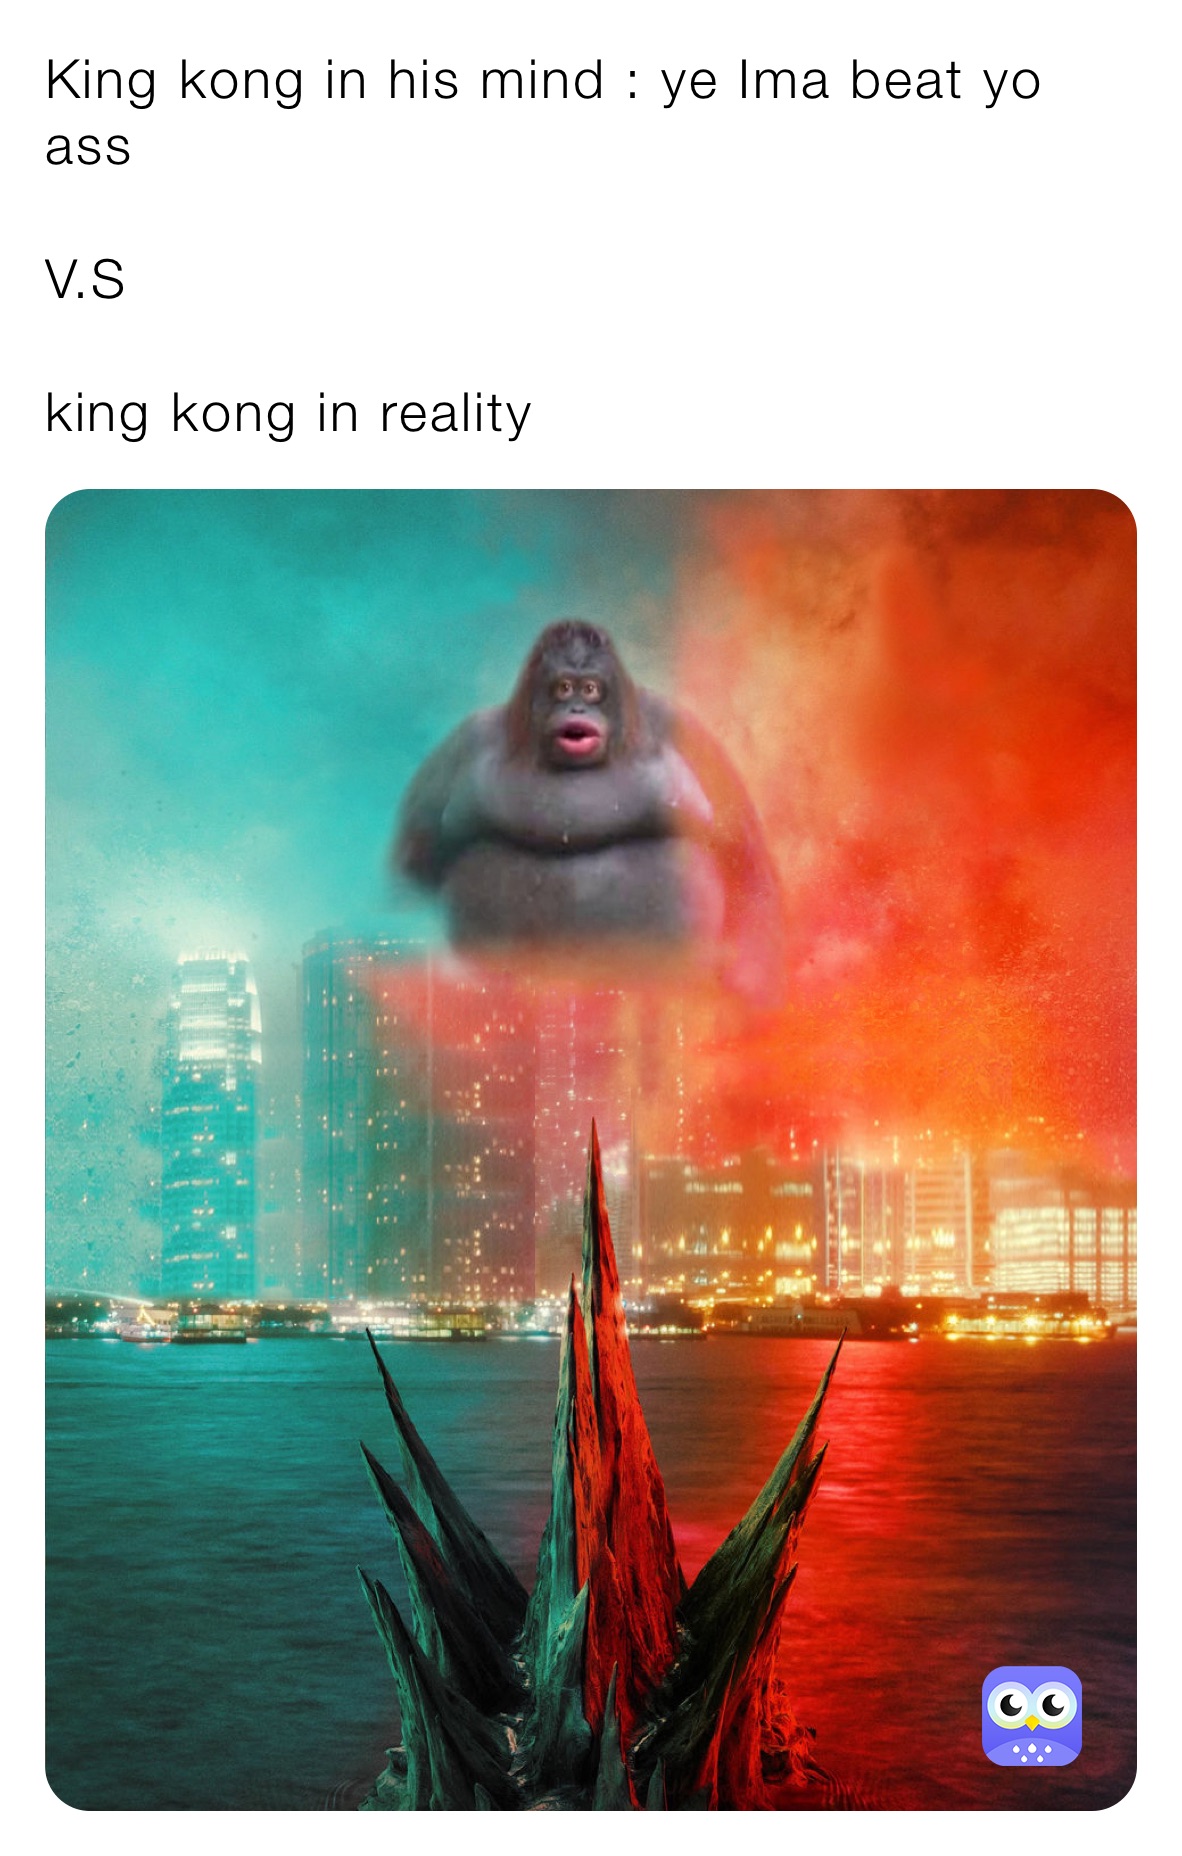 King kong in his mind : ye Ima beat yo ass 

V.S

king kong in reality 